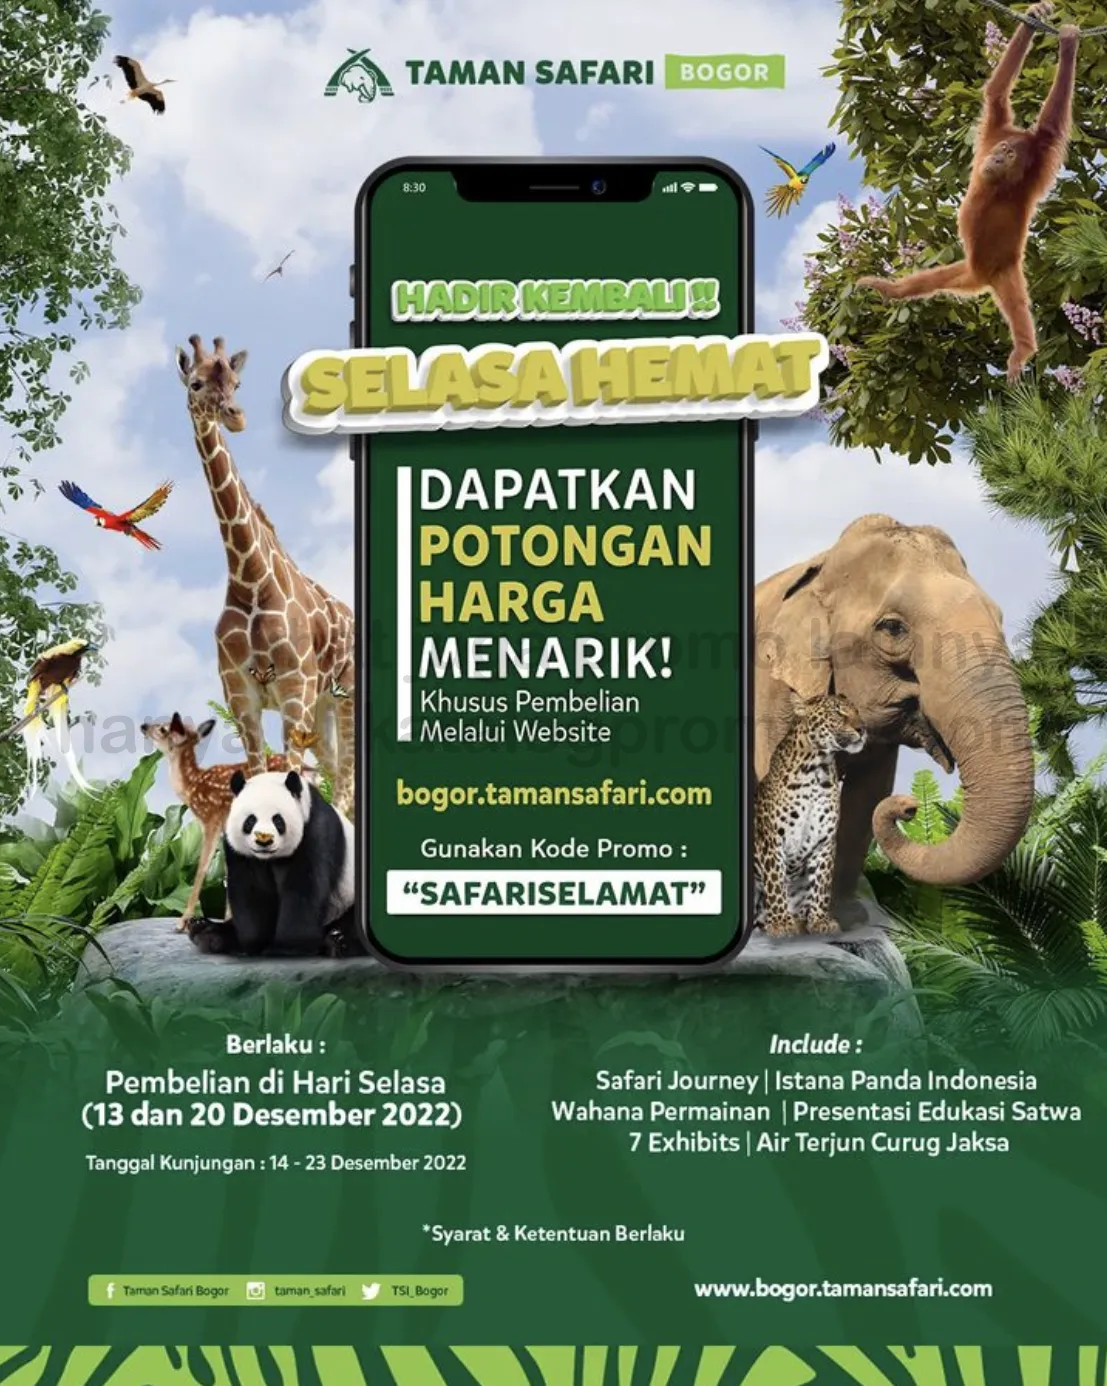 Promo TAMAN SAFARI SELAsa heMAT - HARGA SPESIAL untuk TIKET MASUK Safari Siang + Panda